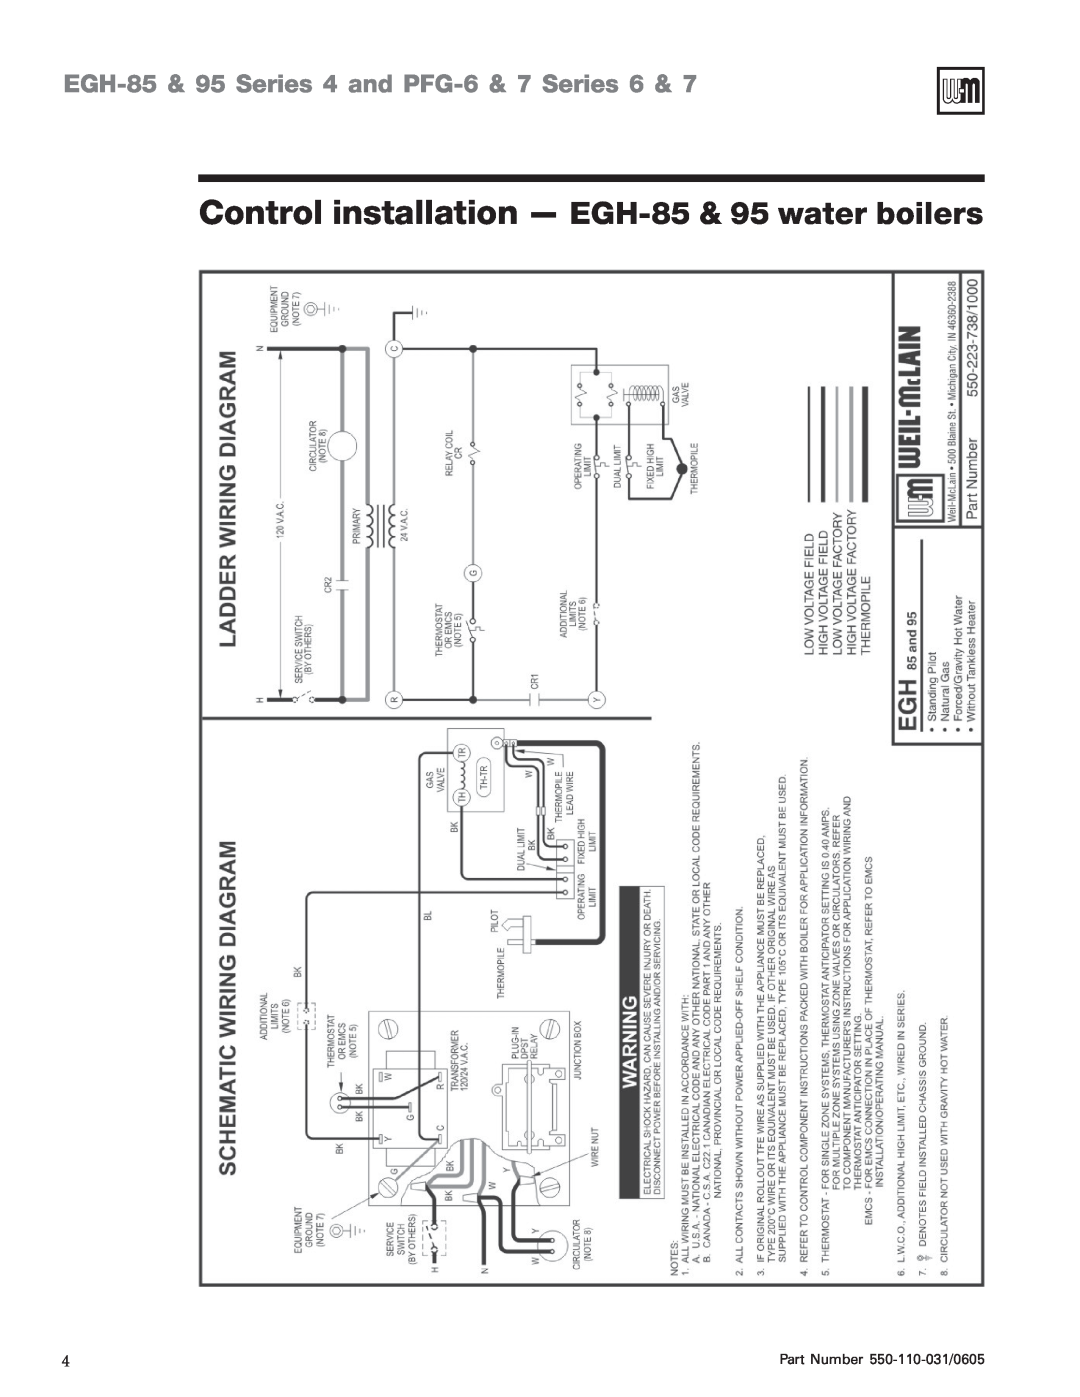 Weil-McLain EGH-95 manual Control installation - EGH-85& 95 water boilers, EGH-85& 95 Series 4 and PFG-6& 7 Series 